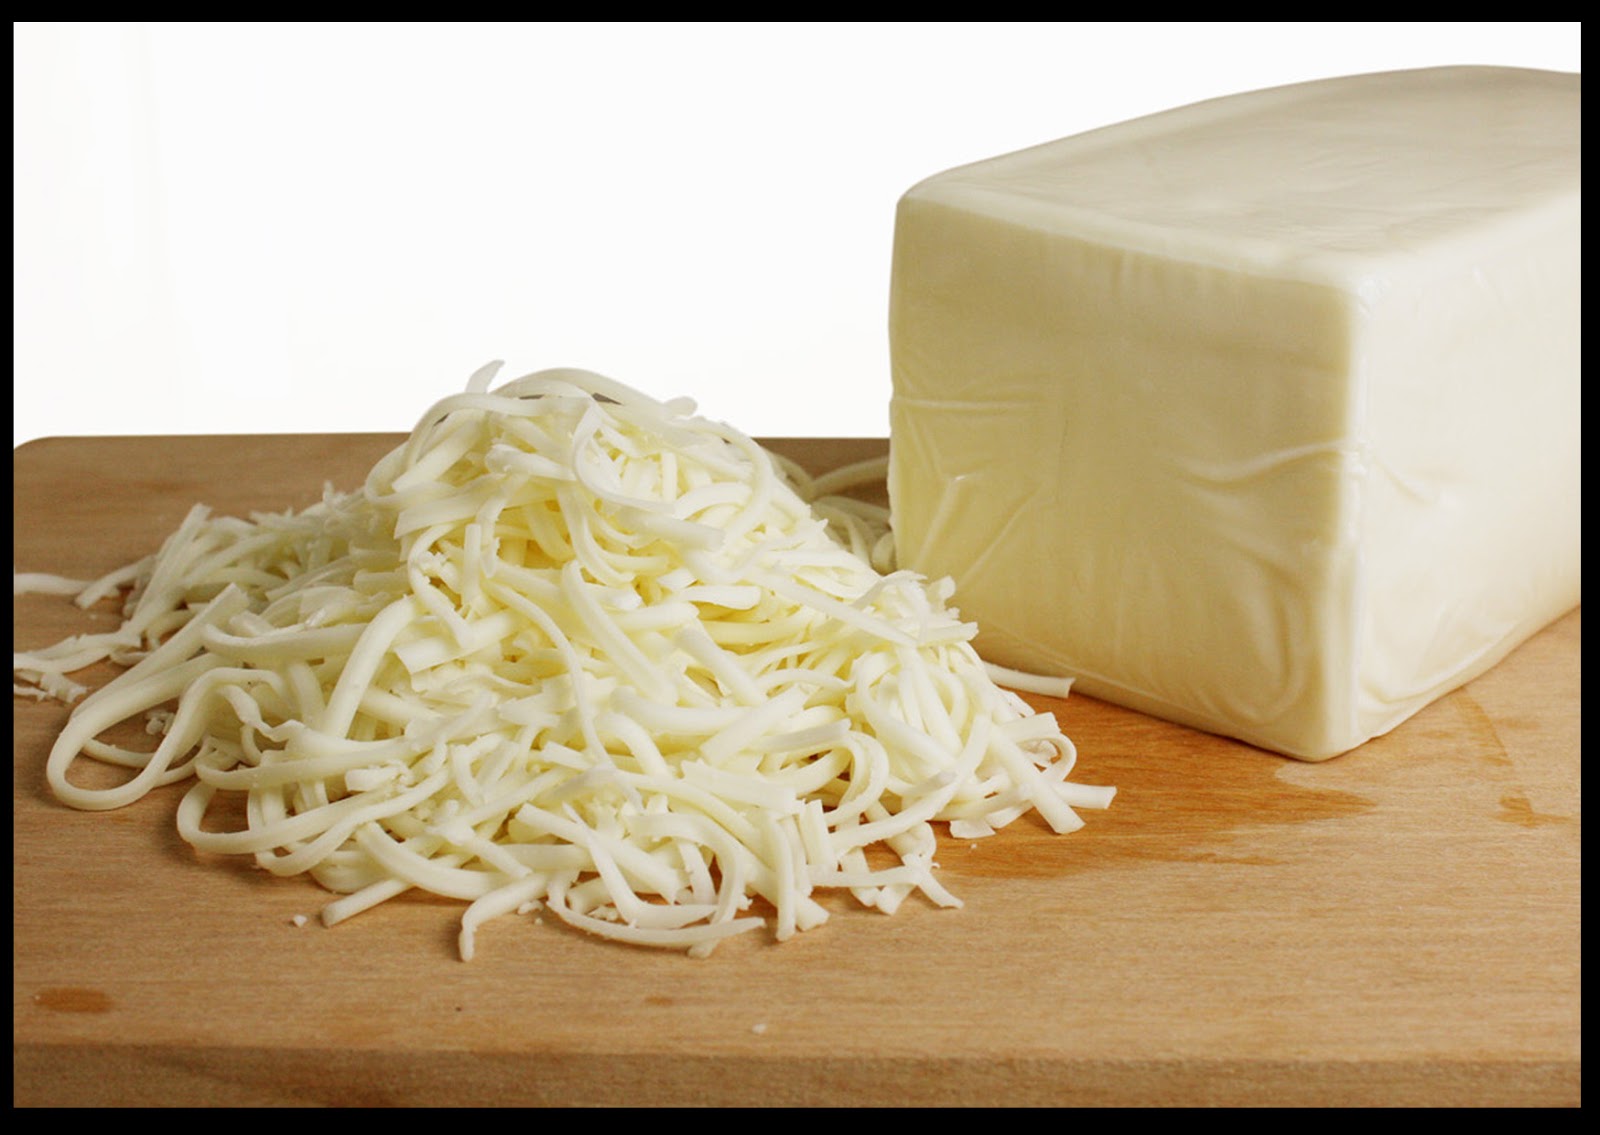 وداعاً لشراء الموتزريلا بعد الآن.. طريقة عمل الجبنة الموتزريلا المطاطية ب 3 مكونات في البيت بنفس طعم الجاهزة واحلي